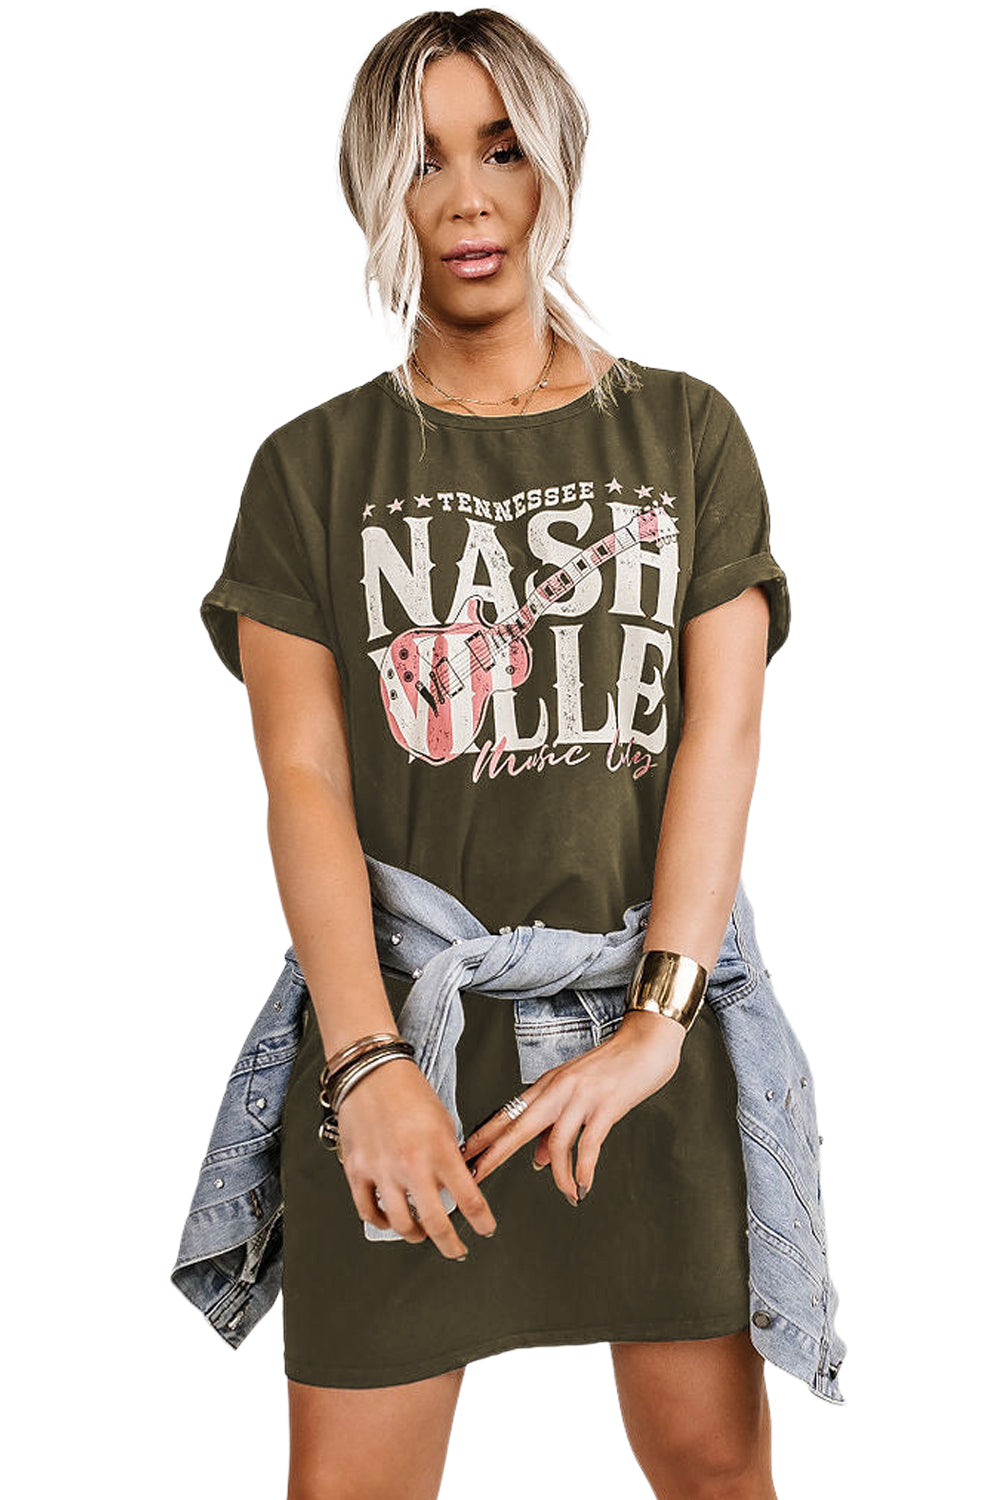 Green Black Nashville Music Festival Trending T-Shirt Dress Dresses JT's Designer Fashion